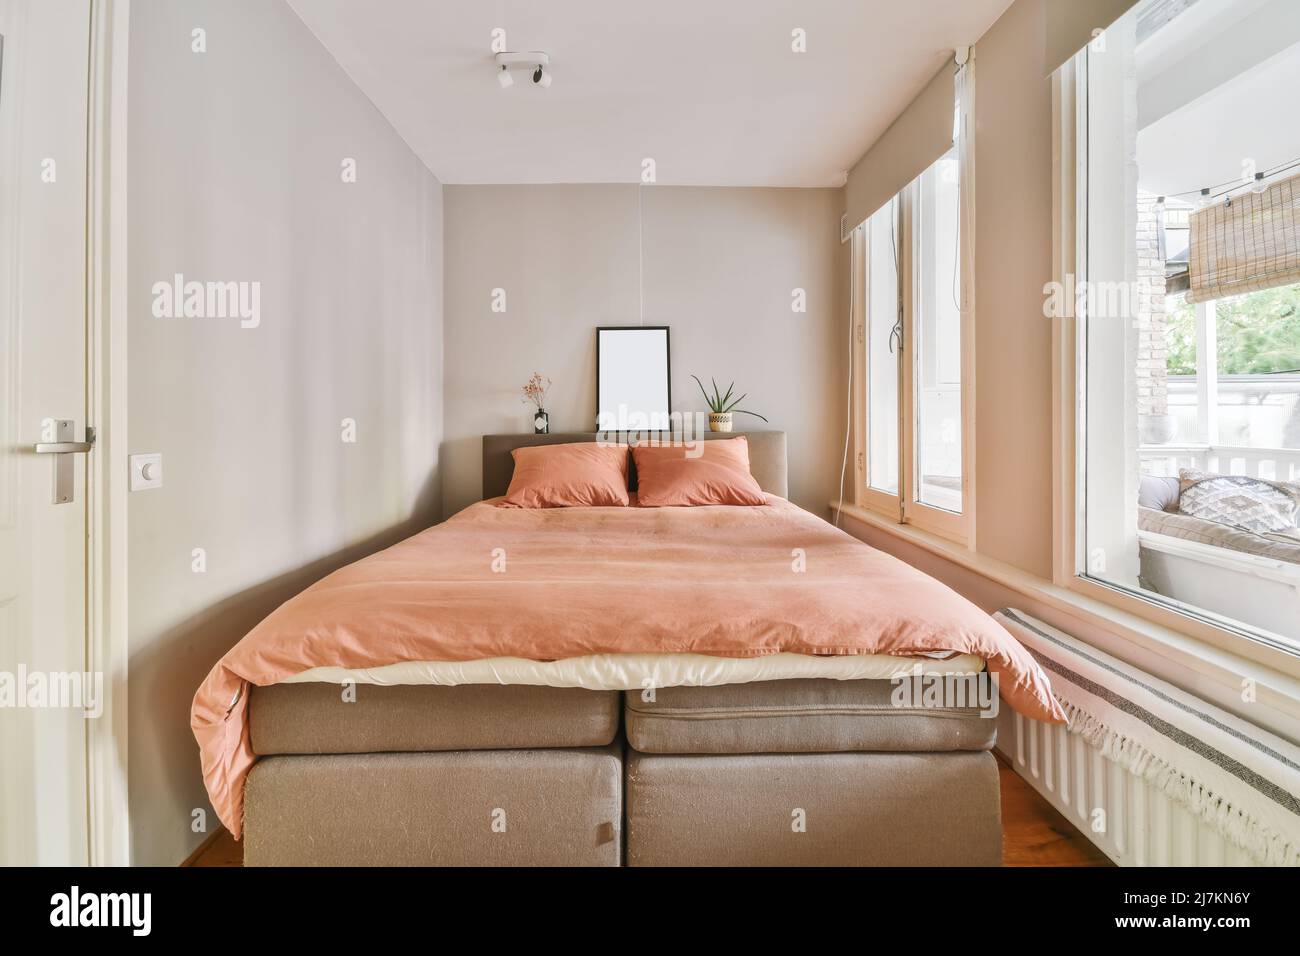 Komfortables weiches Bett mit Kissen und Decke, das in einem modernen Schlafzimmer in einem hellen Apartment neben den Fenstern platziert wurde Stockfoto